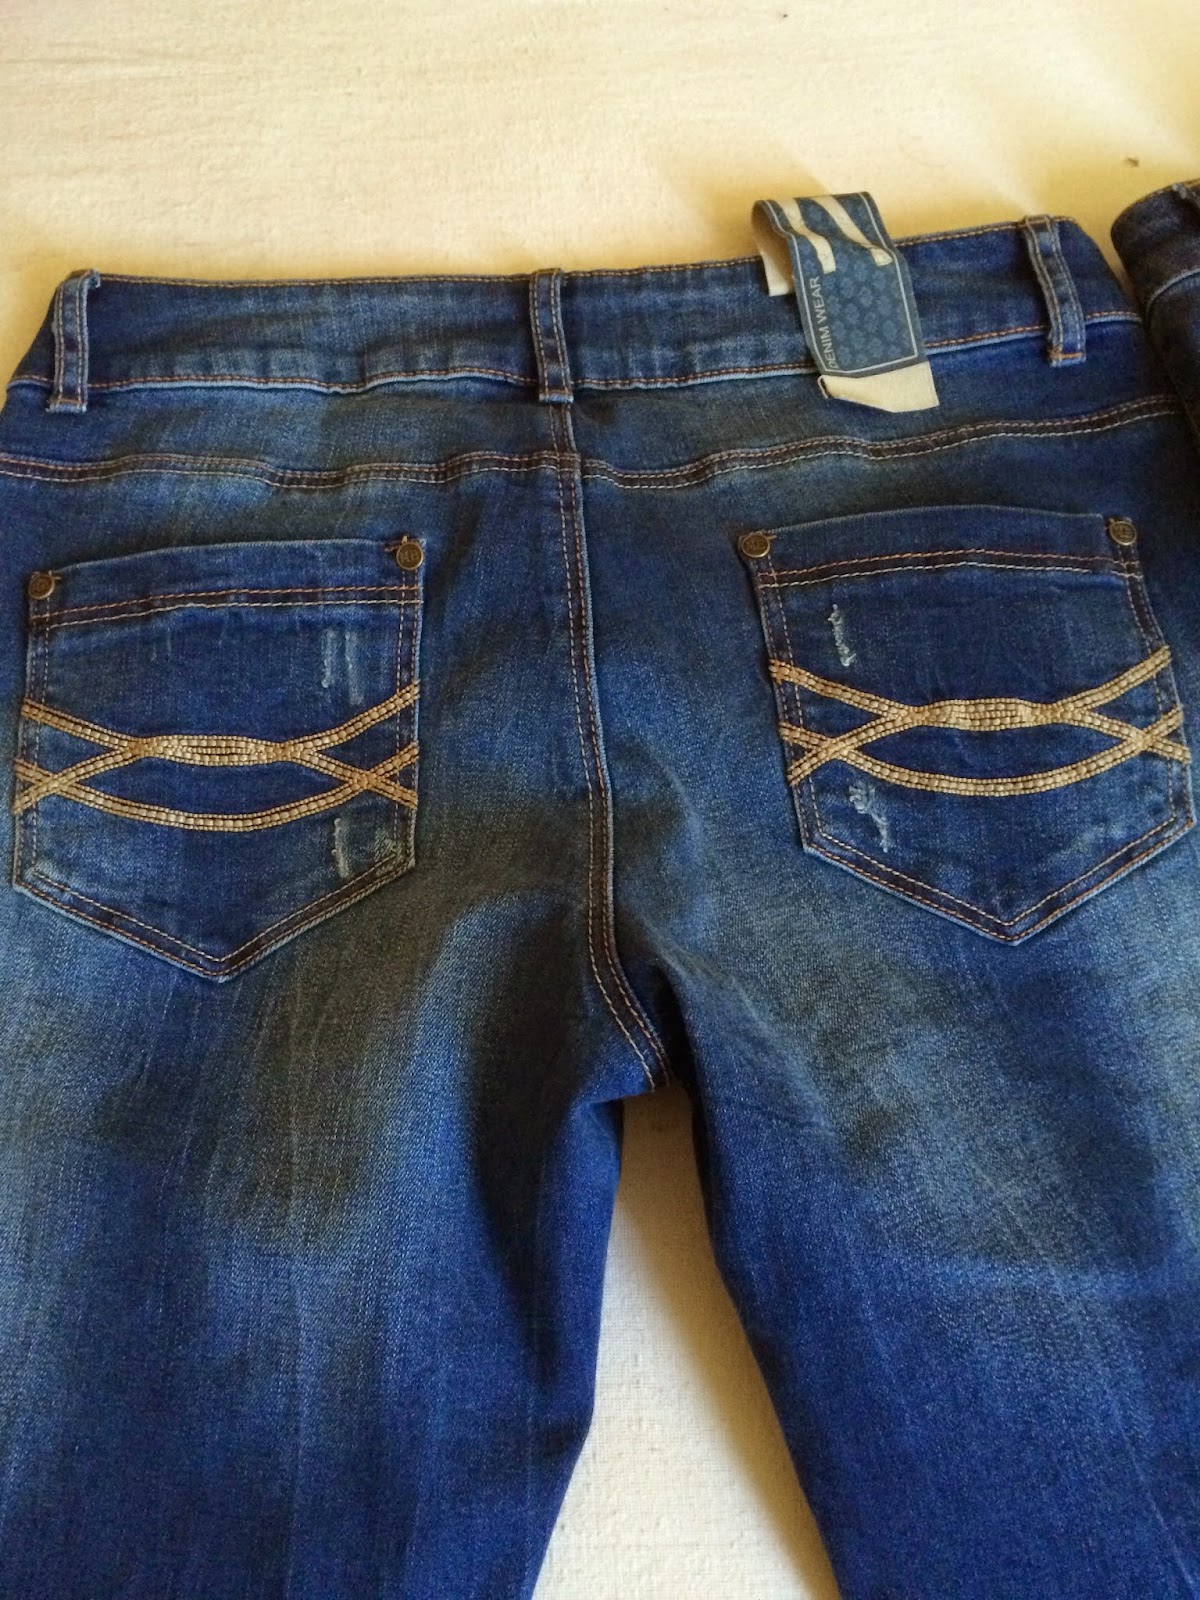 *Werbung* Shoptest Jeans Fritz 5